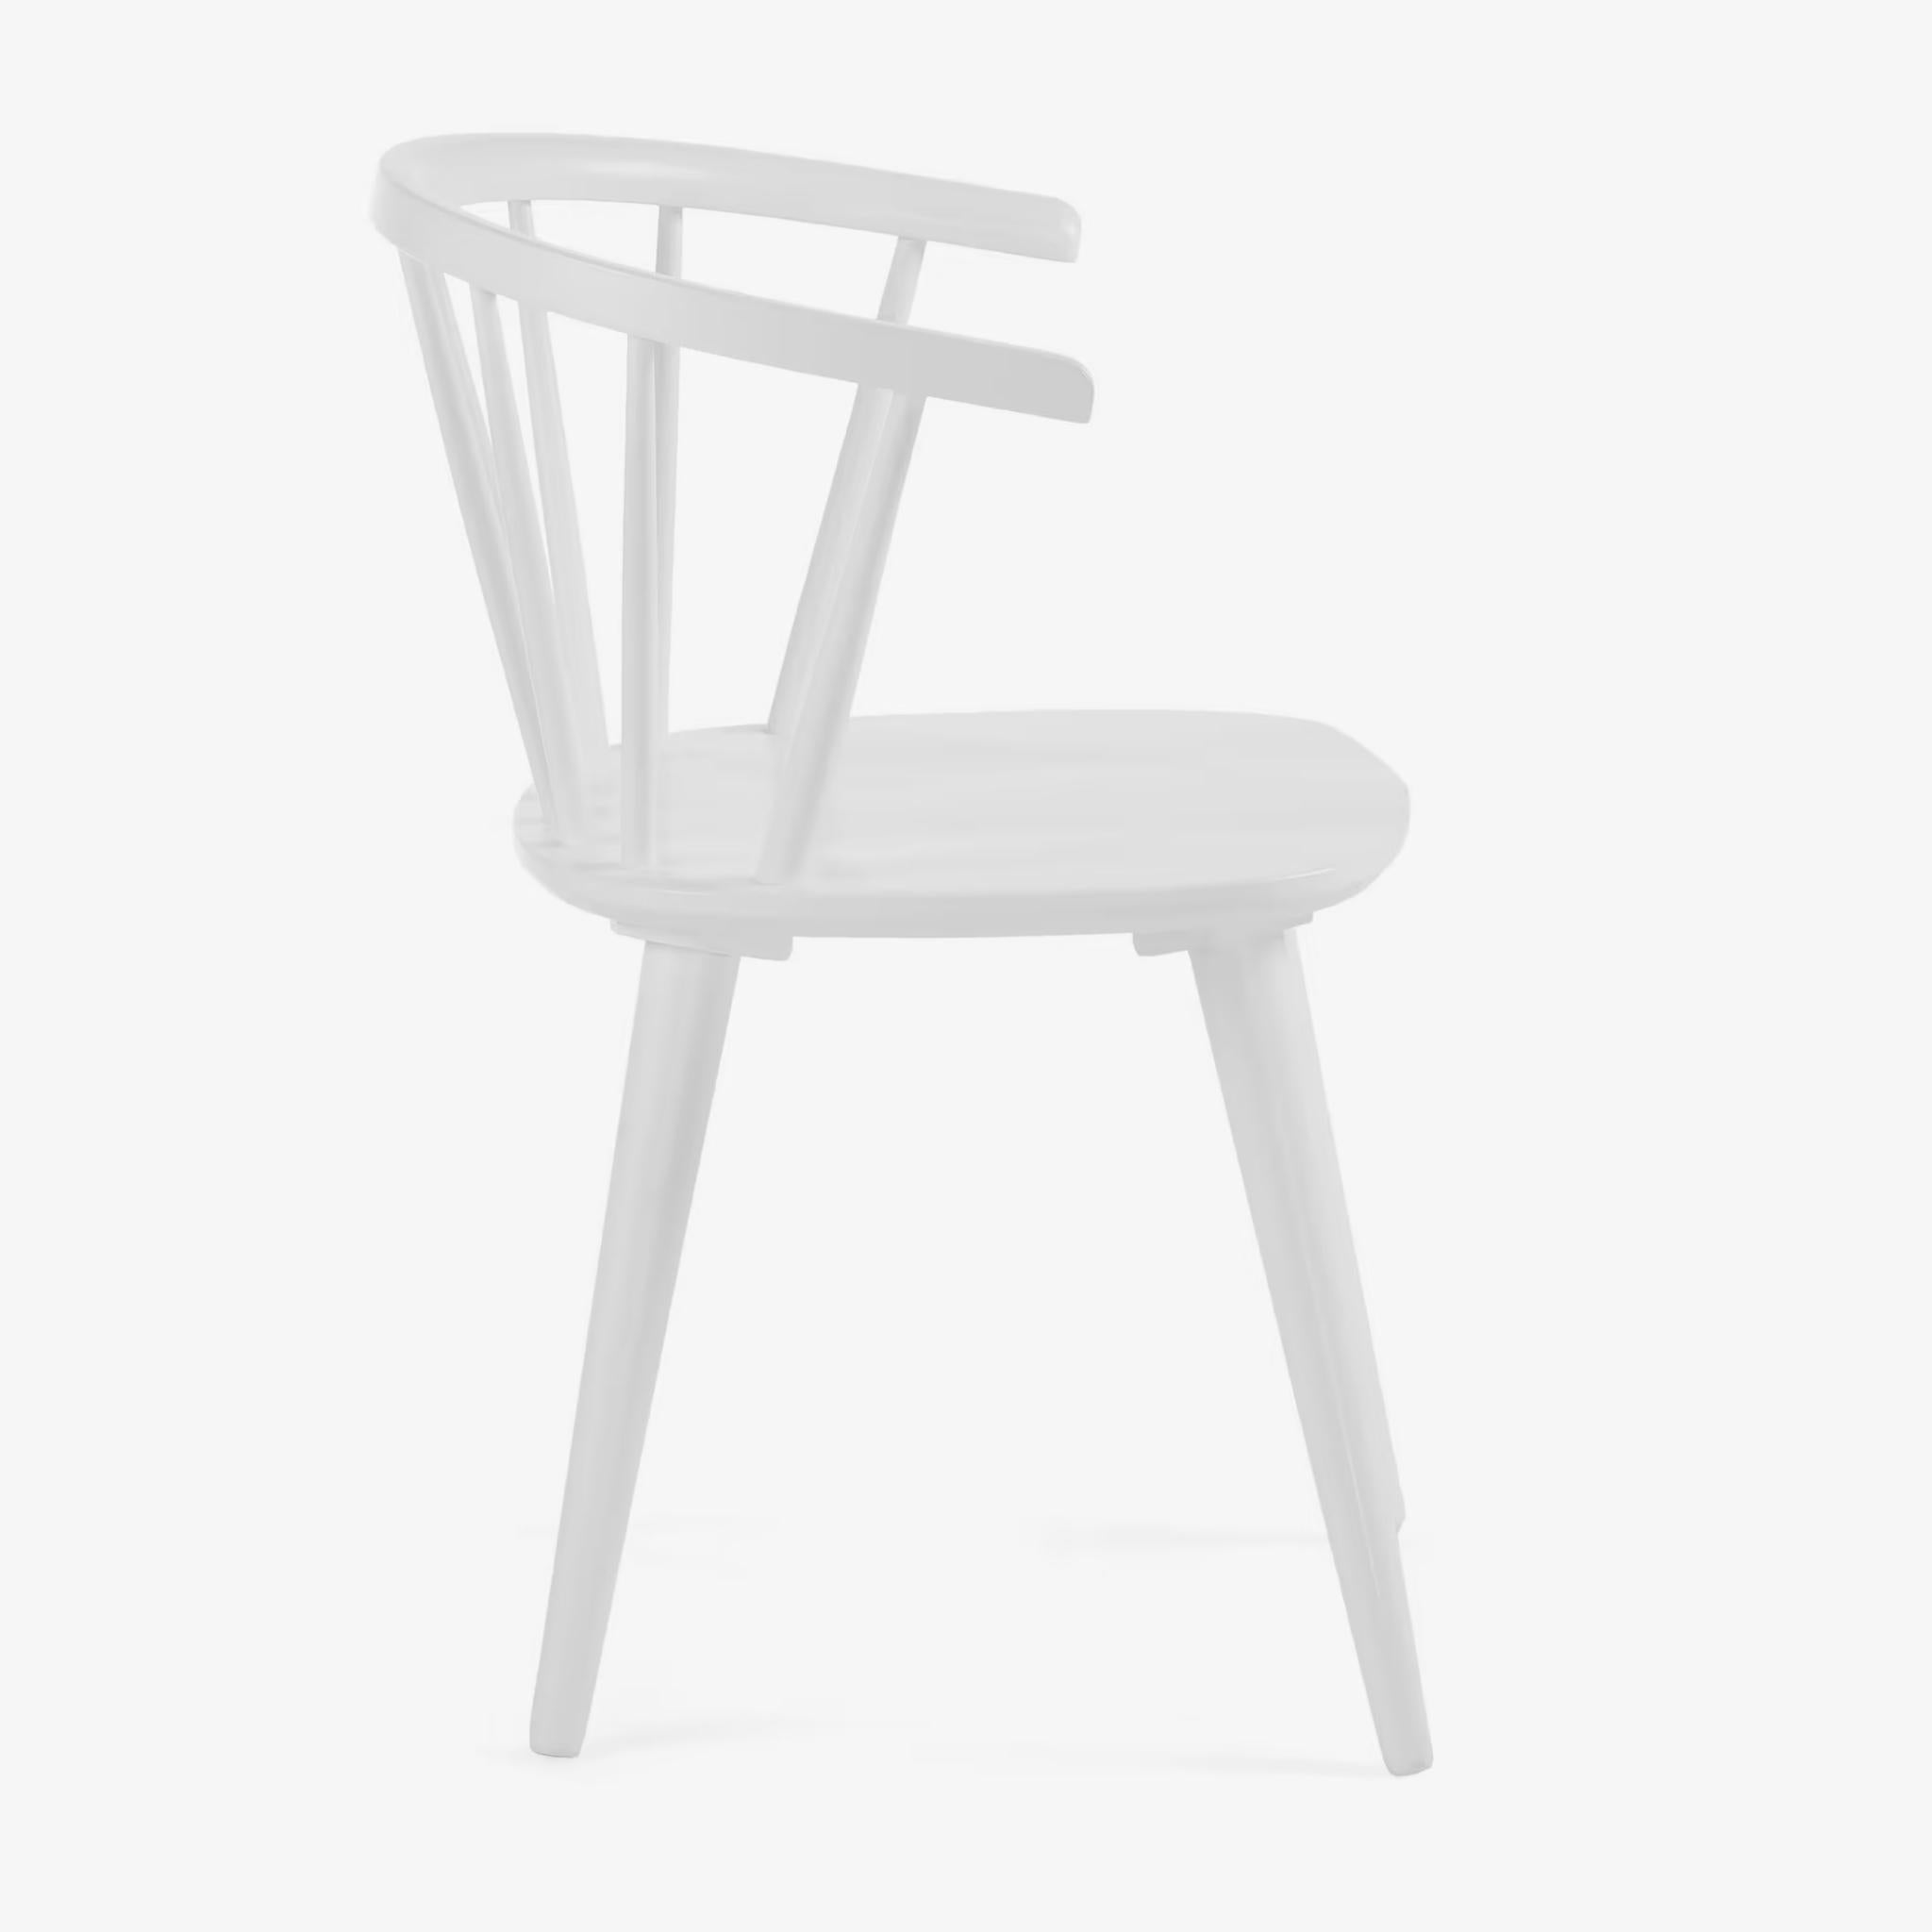 Kave Home Trise Stuhl - Farbe Weiß - SKU #CC0219M05 - weißer Hintergrund seitlich